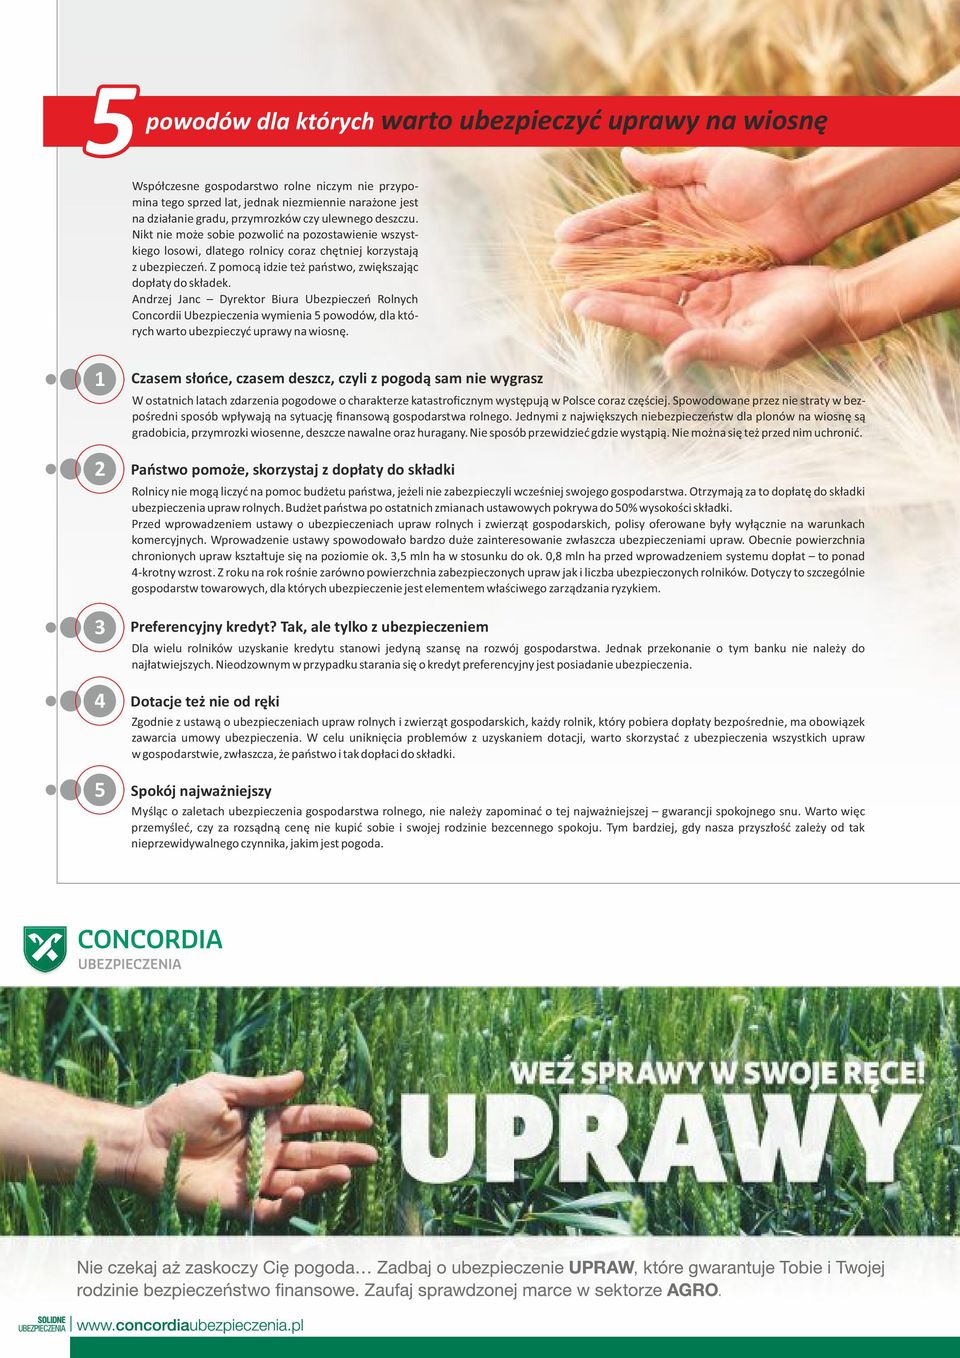 Andrzej Janc Dyrektor Biura Ubezpieczeń Rolnych Concordii Ubezpieczenia wymienia 5 powodów, dla których warto ubezpieczyć uprawy na wiosnę.